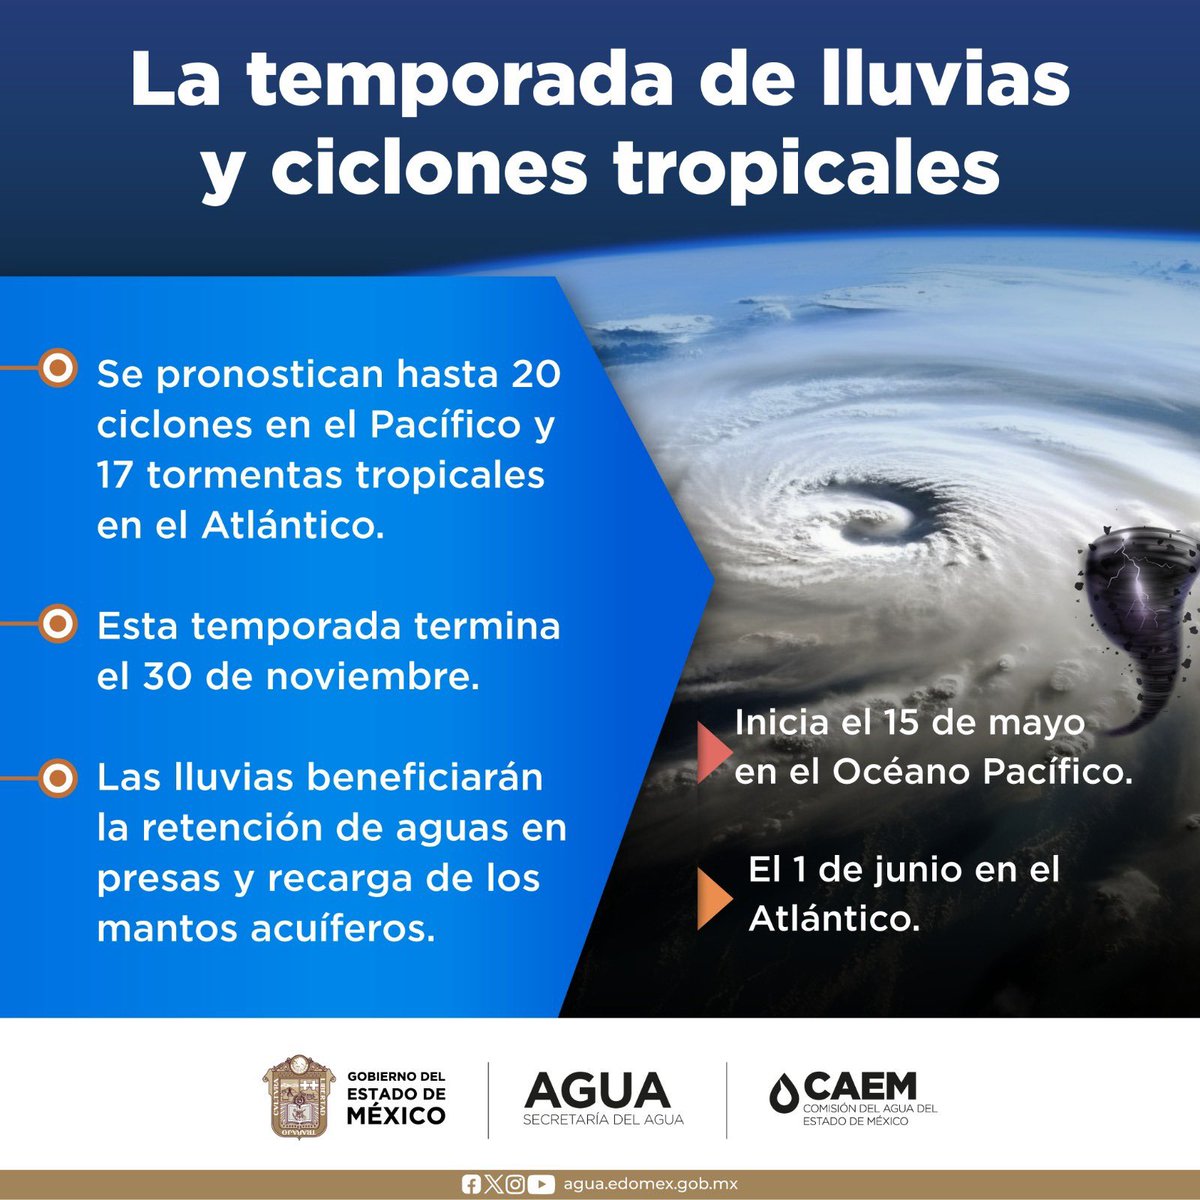 Tomemos medidas preventivas y actuemos con responsabilidad para mantenernos seguros con el inicio de la temporada de lluvias, es fundamental estar preparados. #DerechoHumanoAlAgua @agua_edomex